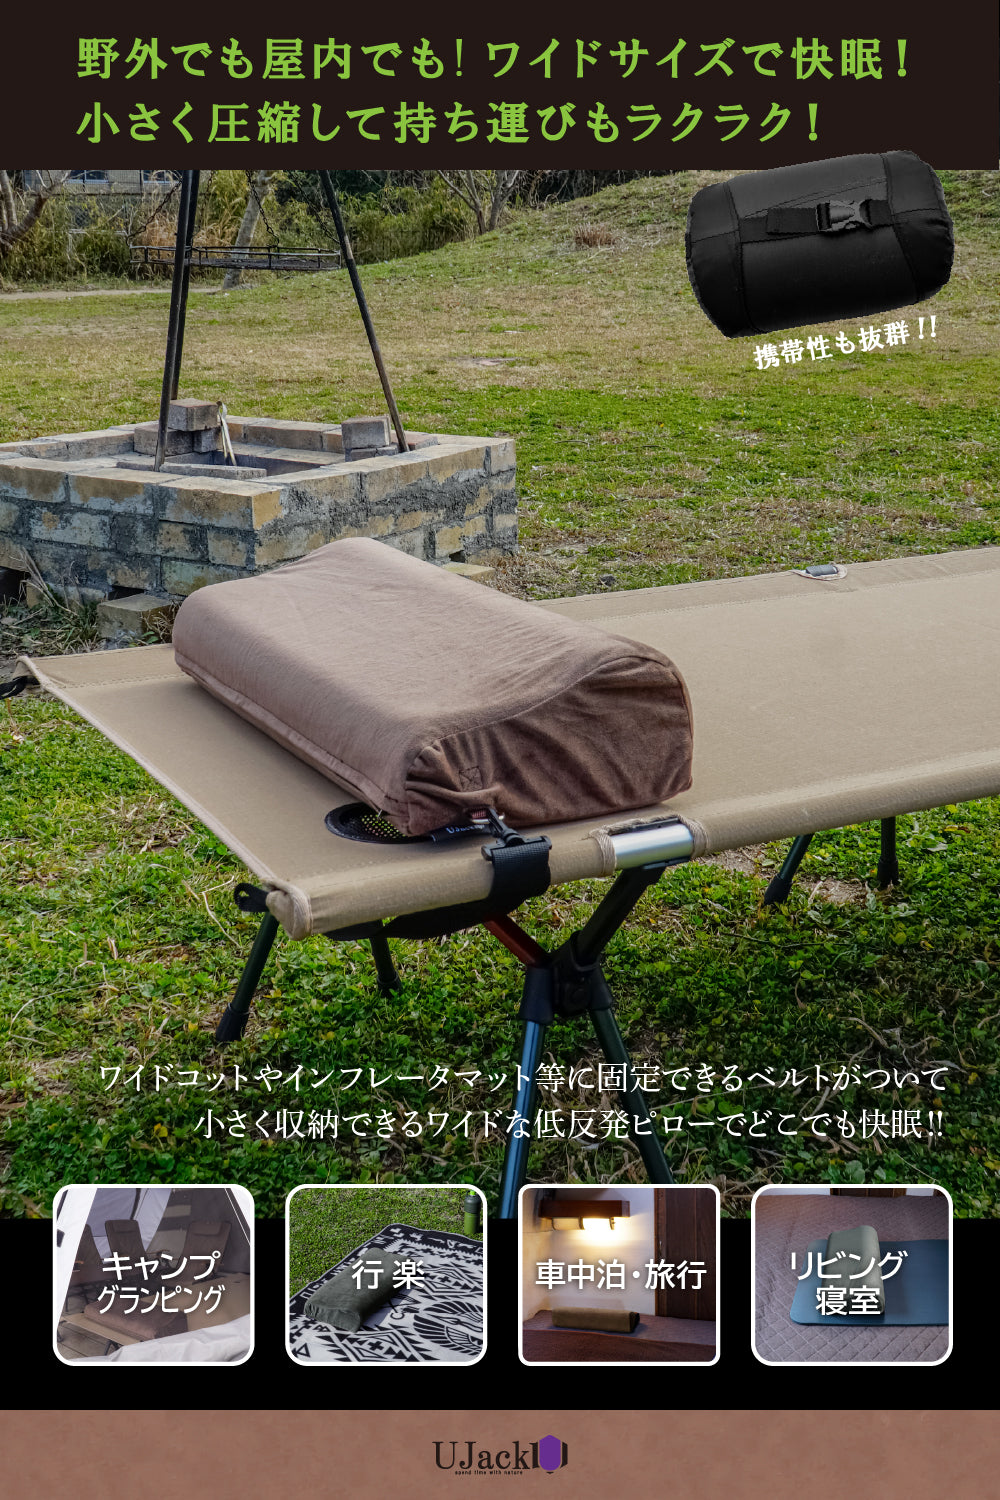 キャンプ枕 ウレタンワイドピロー コンプレッションカバー 固定ベルト 高さ調節可能 – UJack online 公式ストア